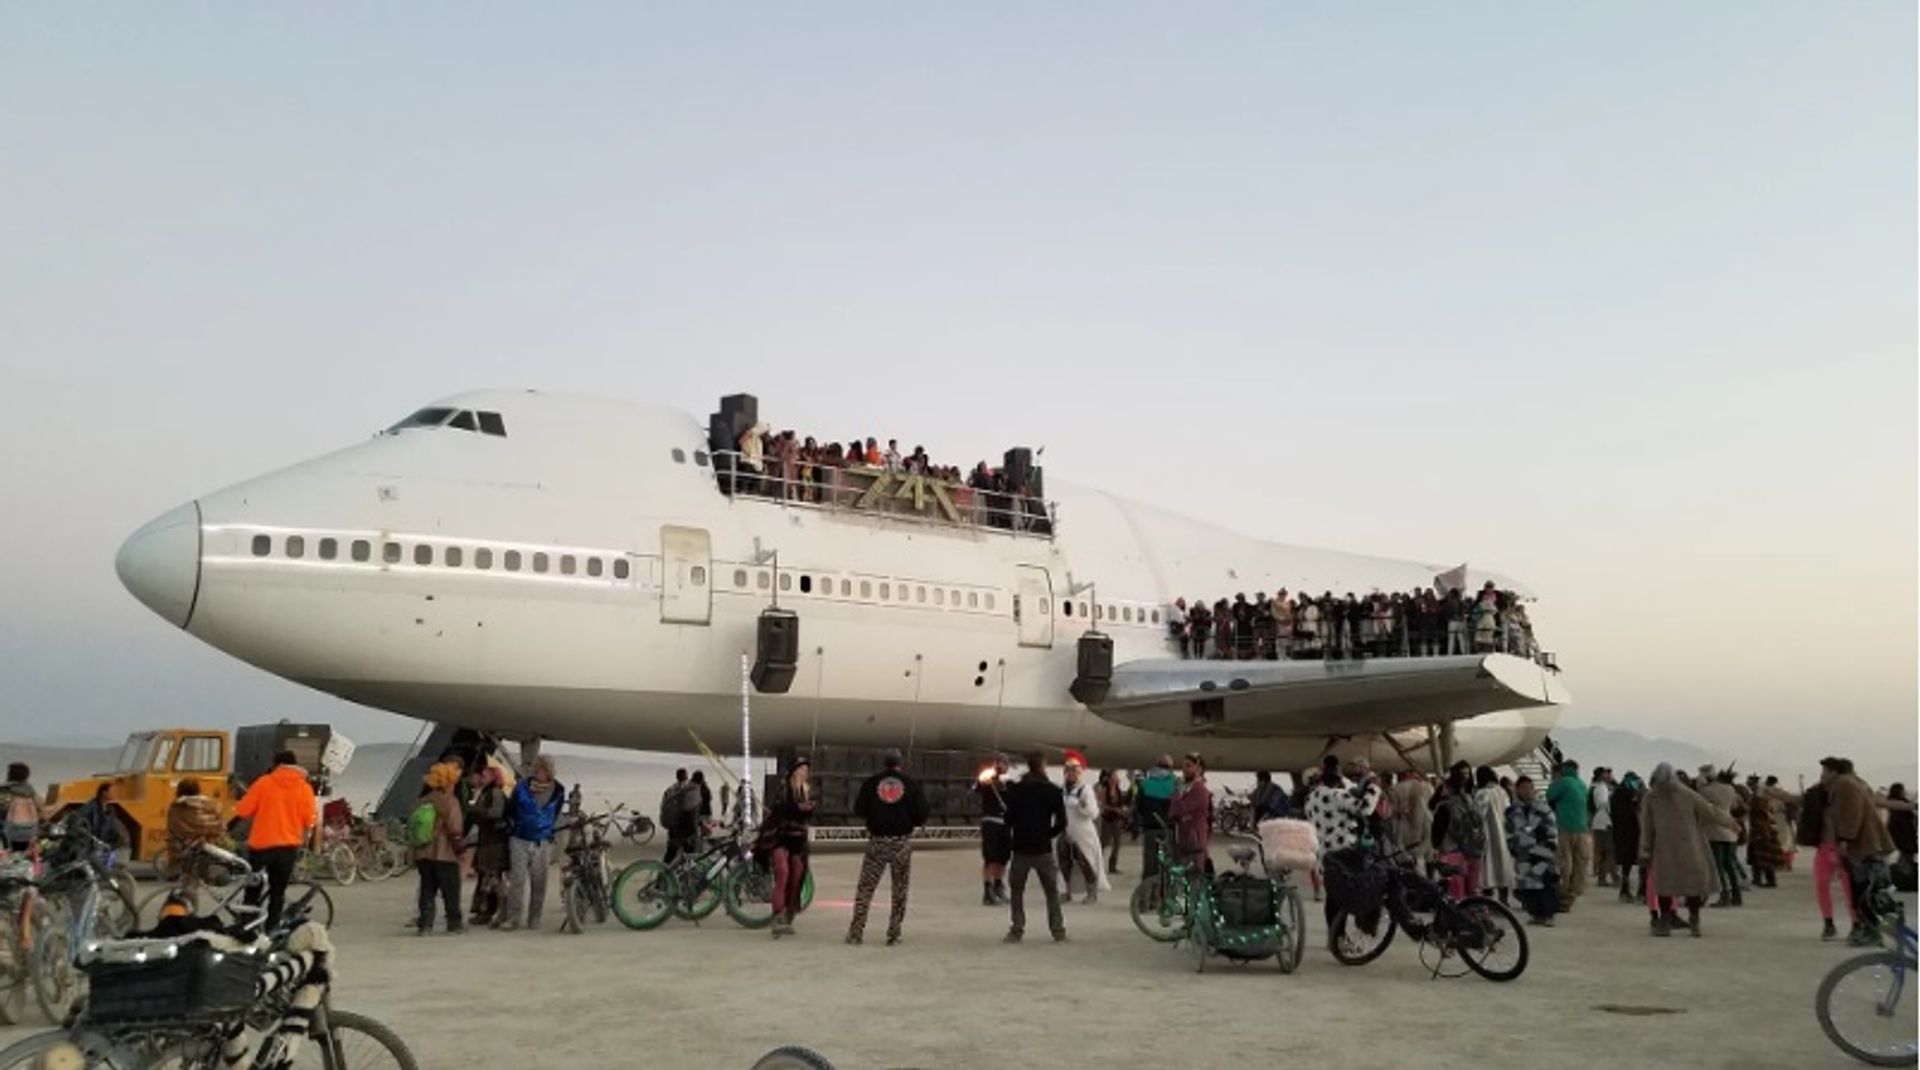 מטוס הבואינג 747 הותקן ב-Burning Man על ידי קן פלדמן ו-Imagination Studio.

צילום: מלאני מקלנהן.